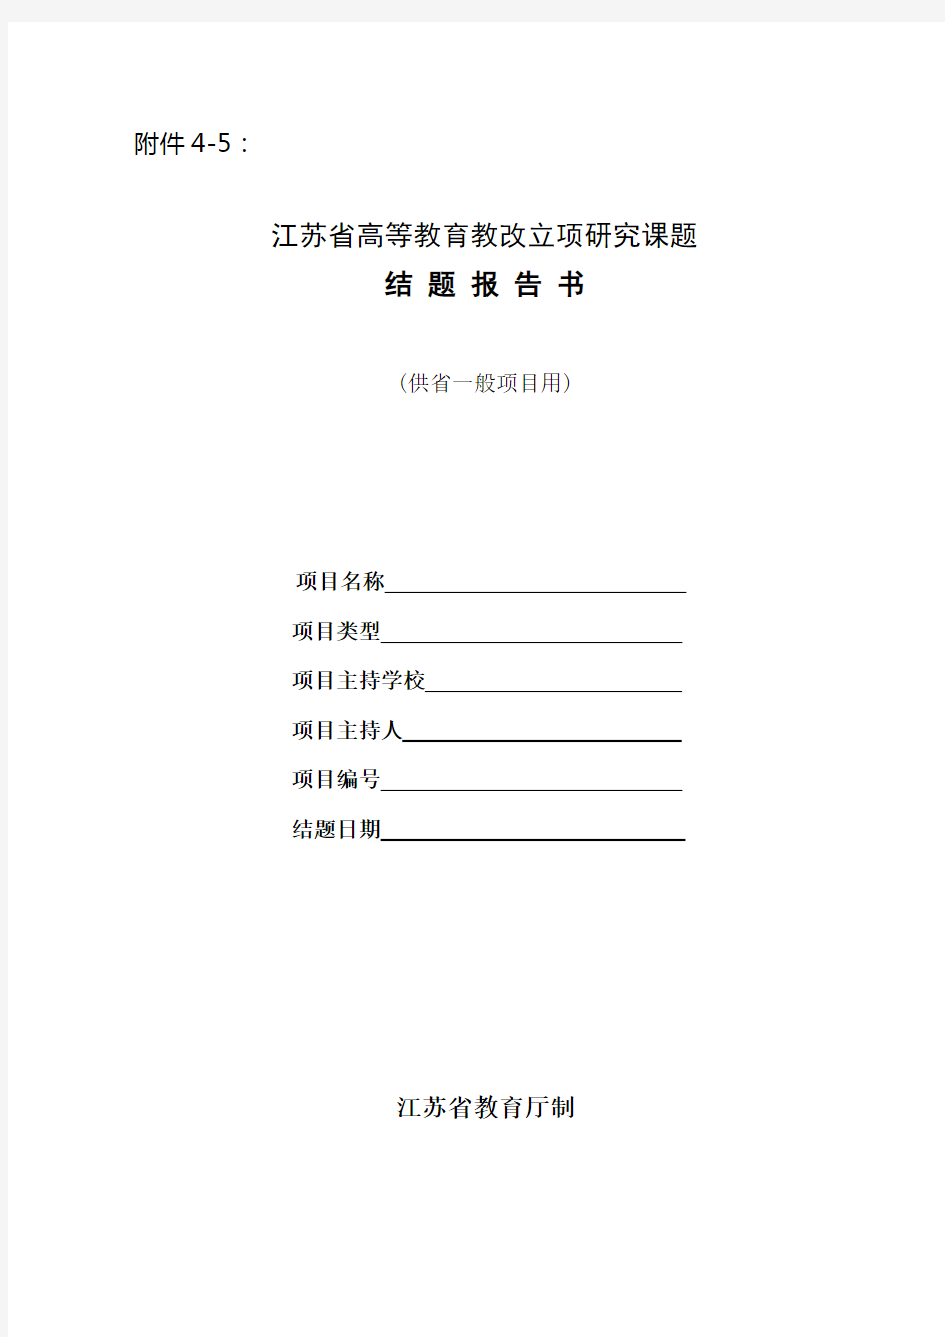 江苏省教育厅教改立项研究课题结题报告书(一般项目)